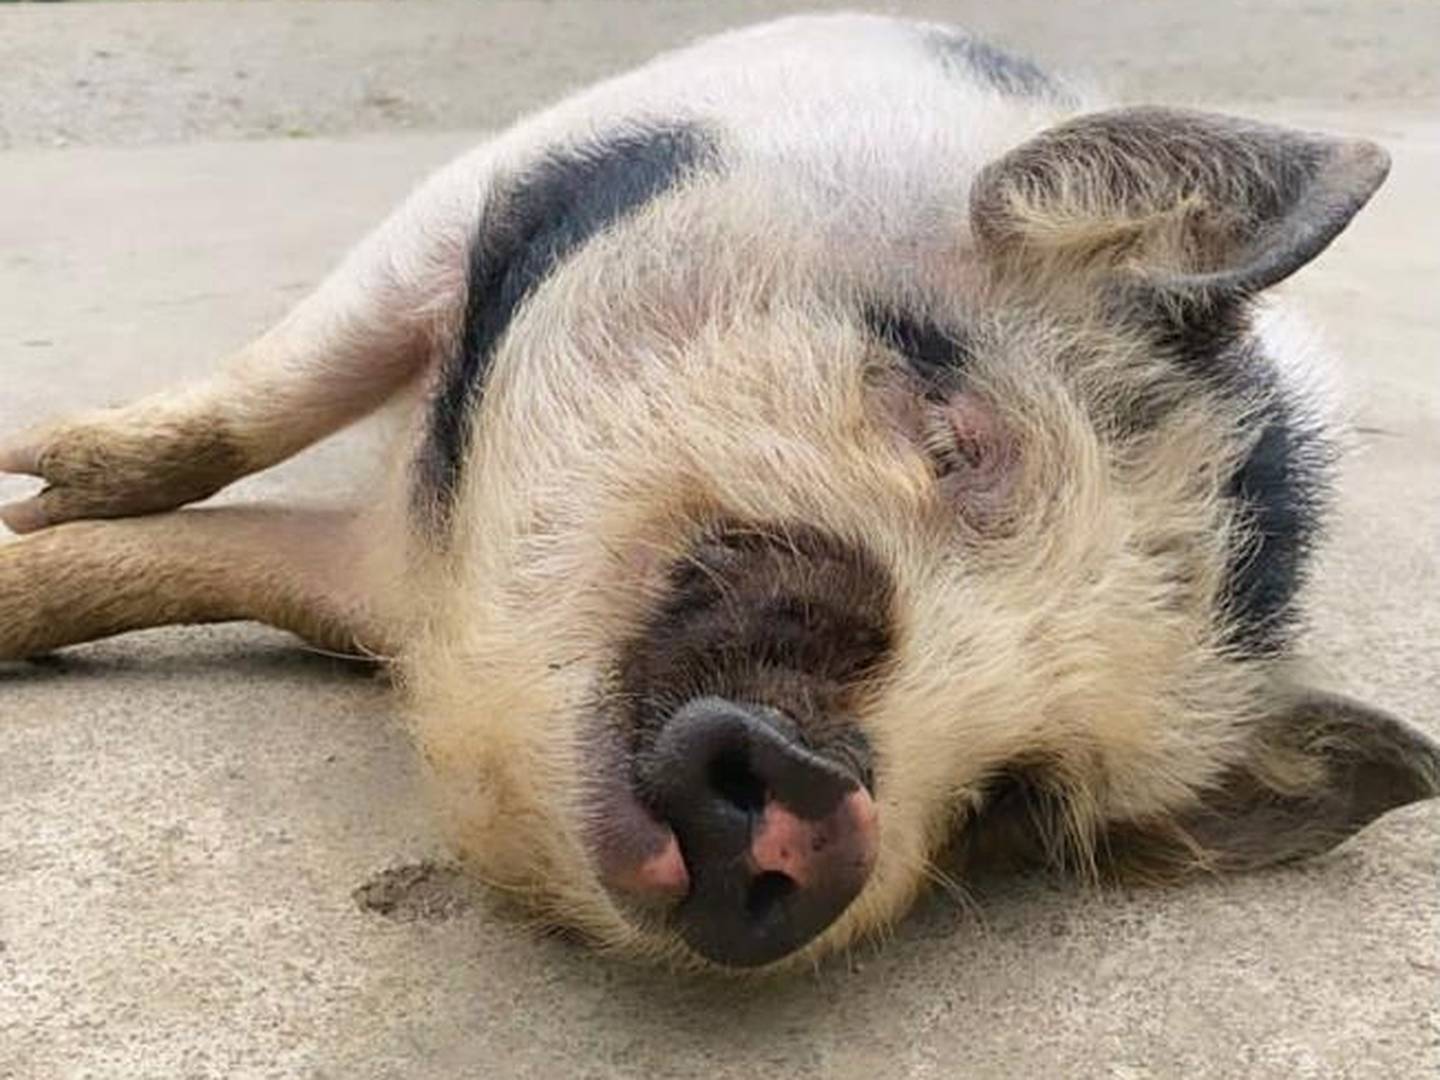 Los cerdos vietnamitas o 'mini pigs' tienen una demanda creciente como mascotas en Costa Rica. El Servicio Nacional de Salud Animal advirtió que deben estar registrados ante la entidad. Foto: Cortesía